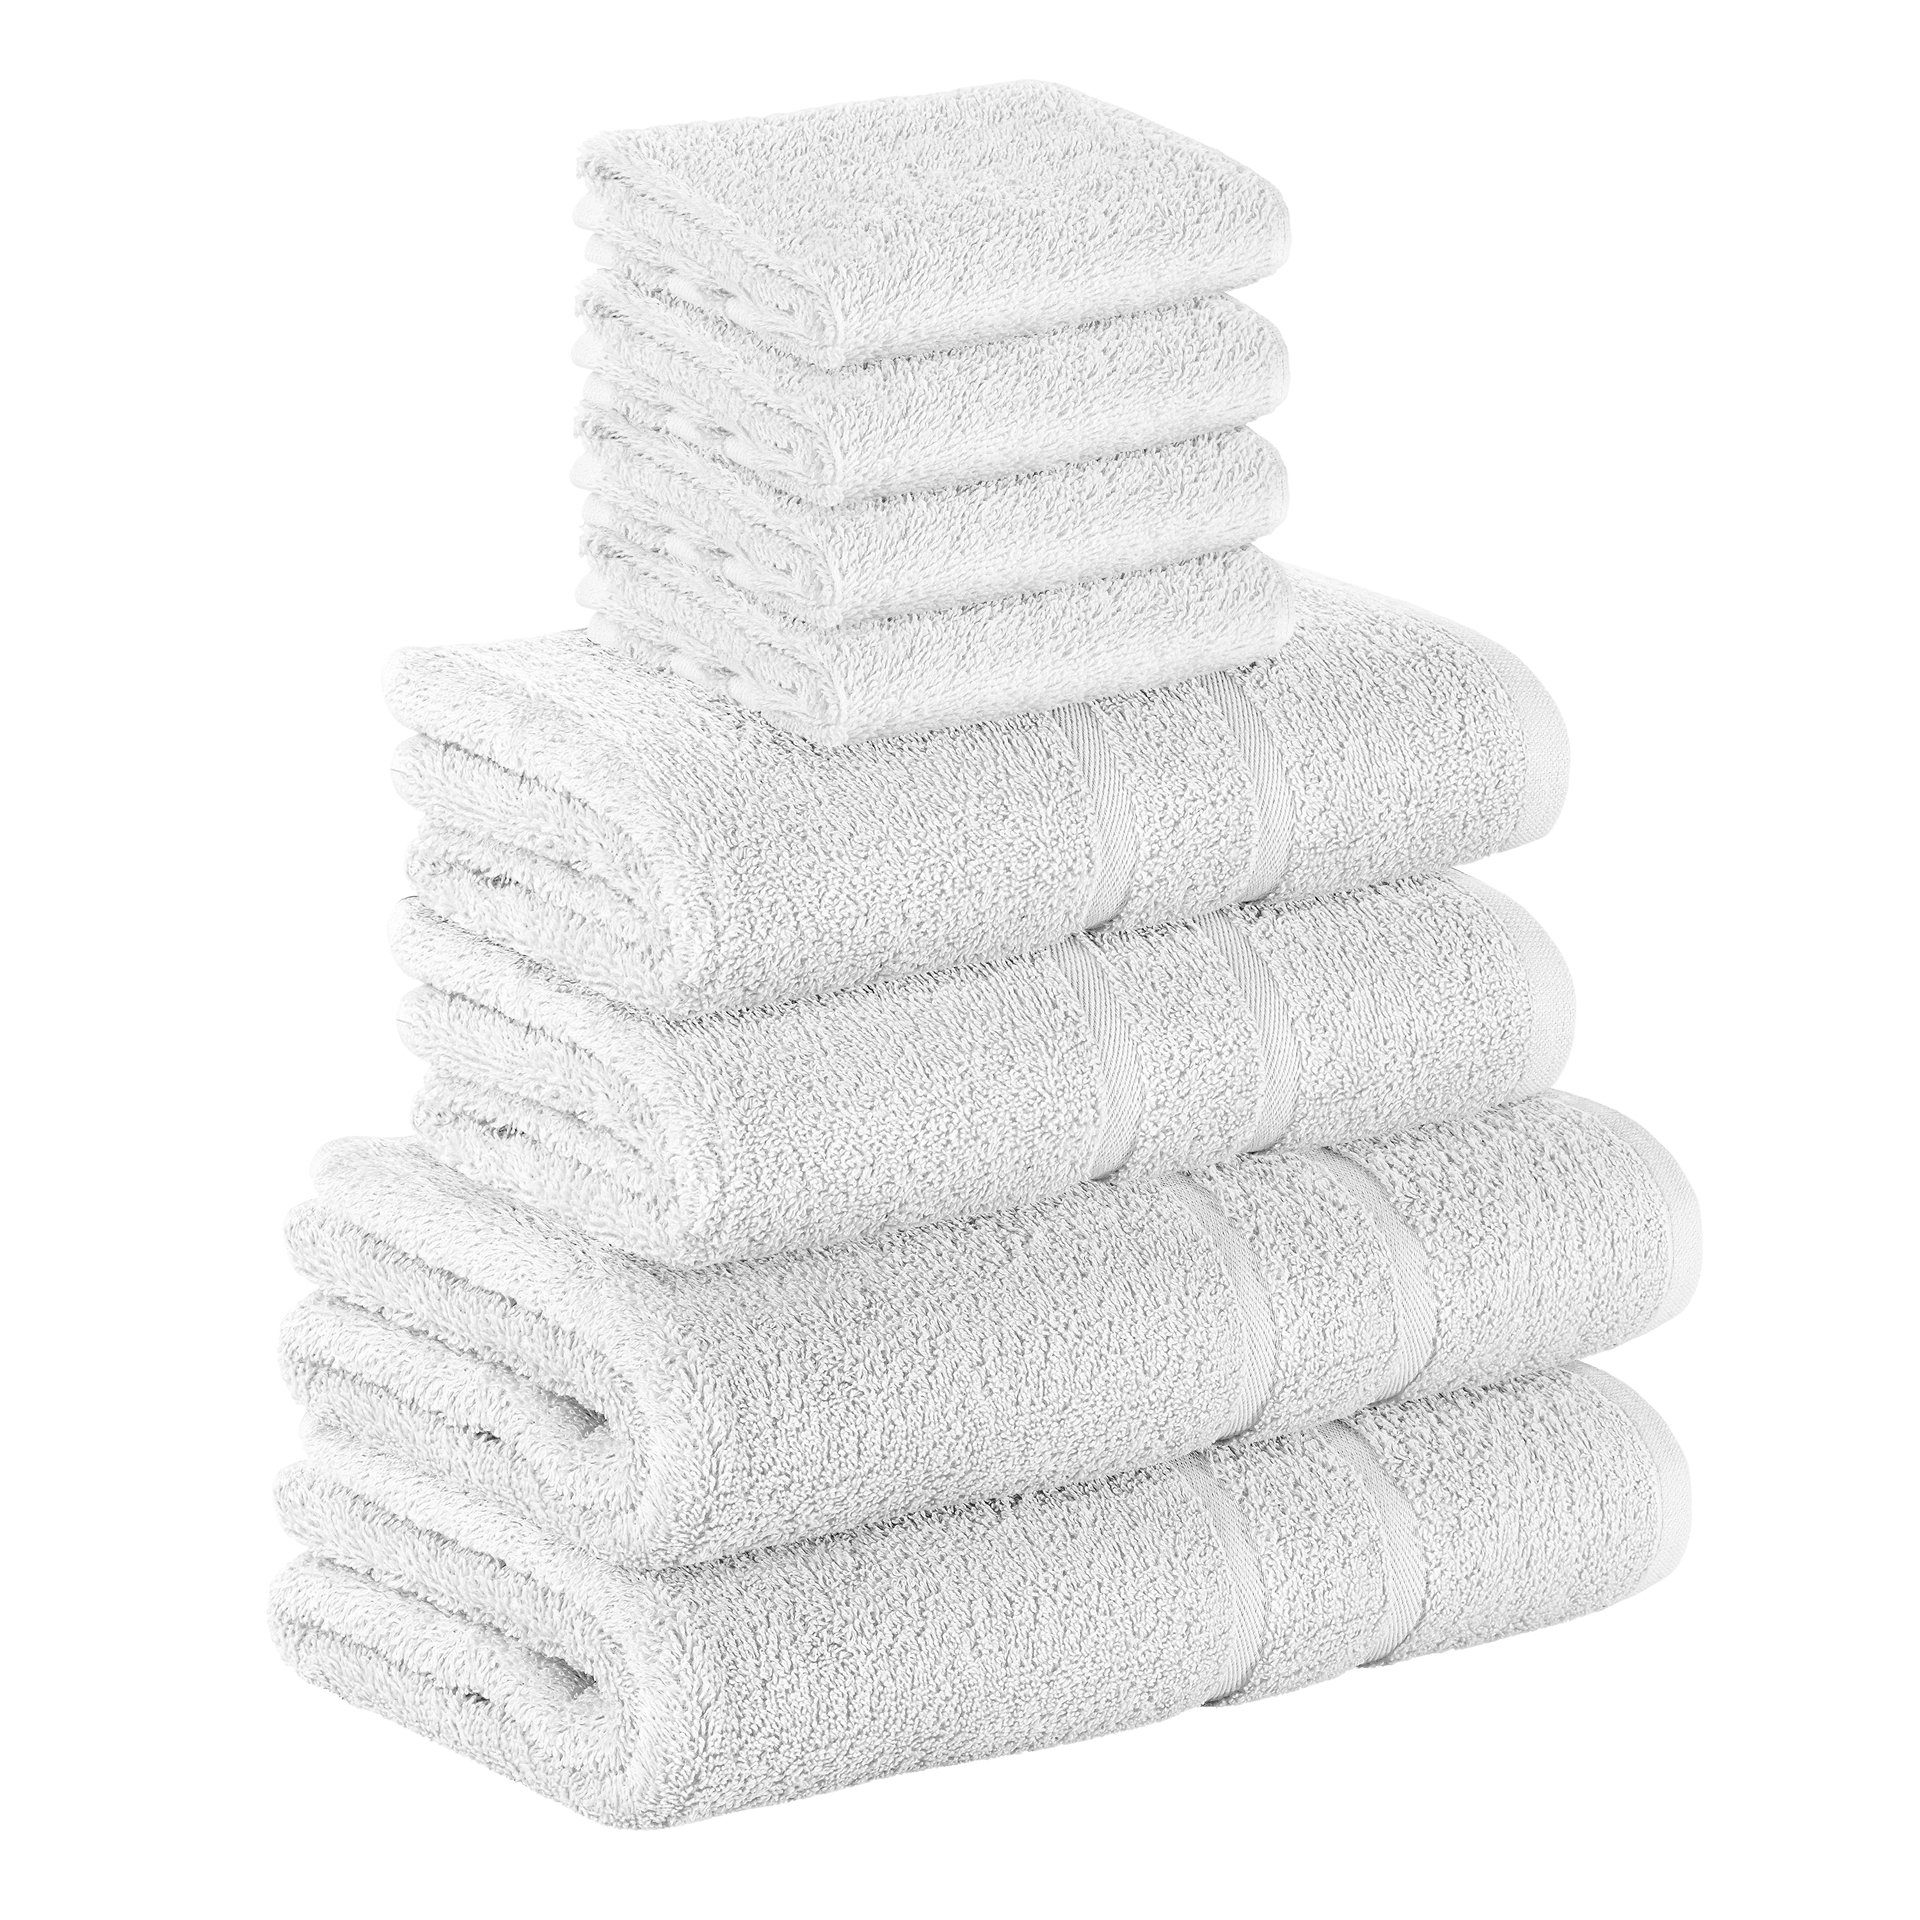 StickandShine Handtuch Set 4x Gästehandtuch 2x Handtücher 2x Duschtücher als SET in verschiedenen Farben (8 Teilig) 100% Baumwolle 500 GSM Frottee 8er Handtuch Pack, (Spar-set), 100% Baumwolle 500 GSM Weiß